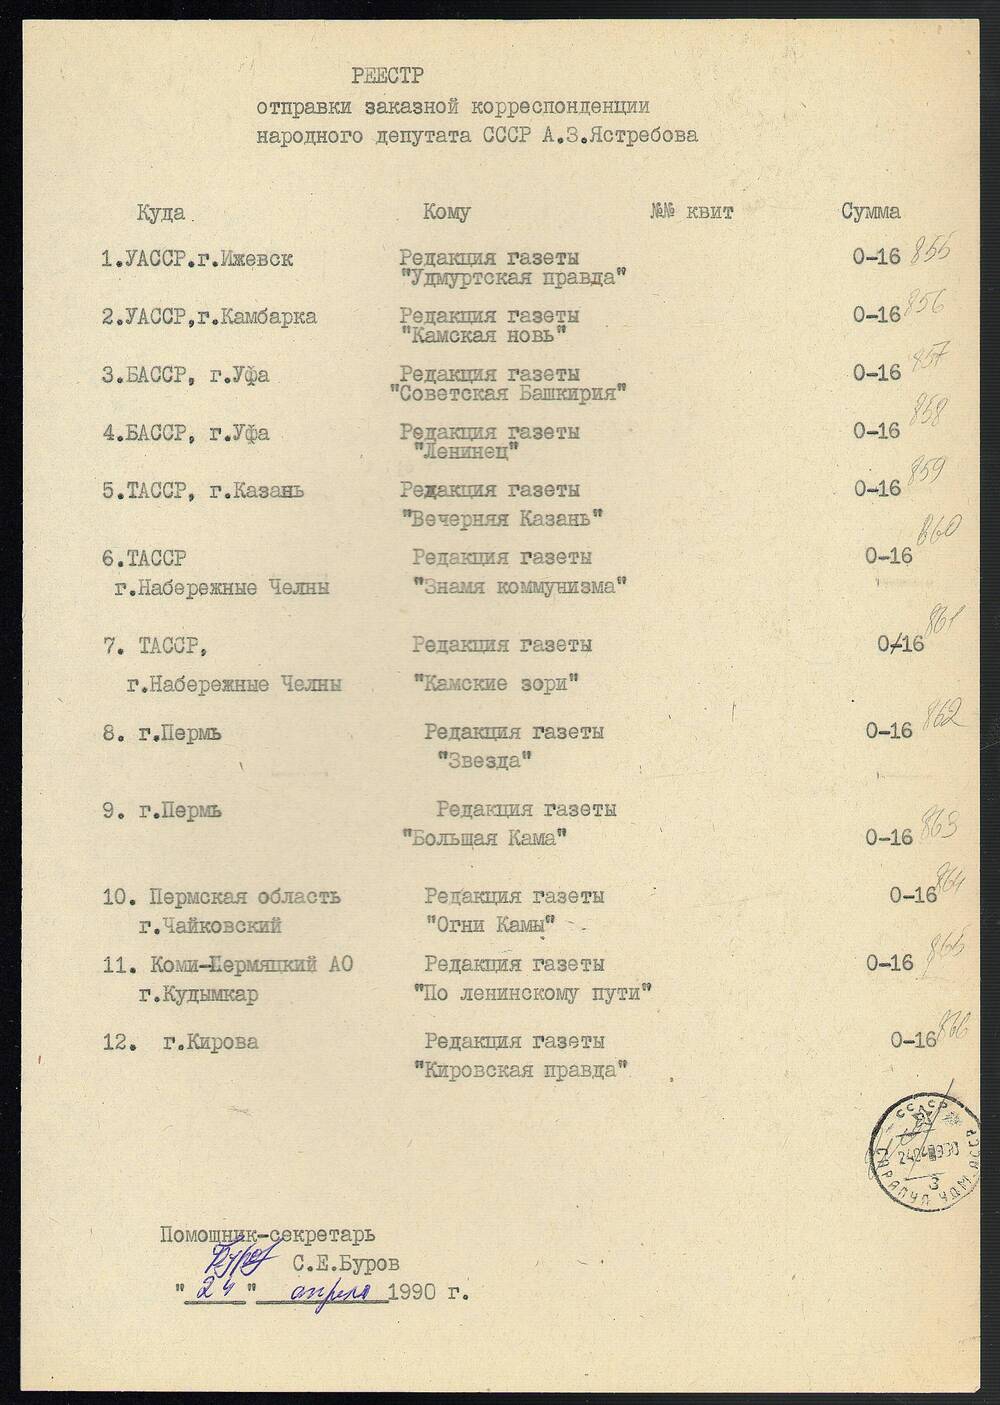 Реестр отправки заказной корреспонденции Ястребова А.З. – народного депутата СССР от 24 апреля 1990 г., 1 лист.